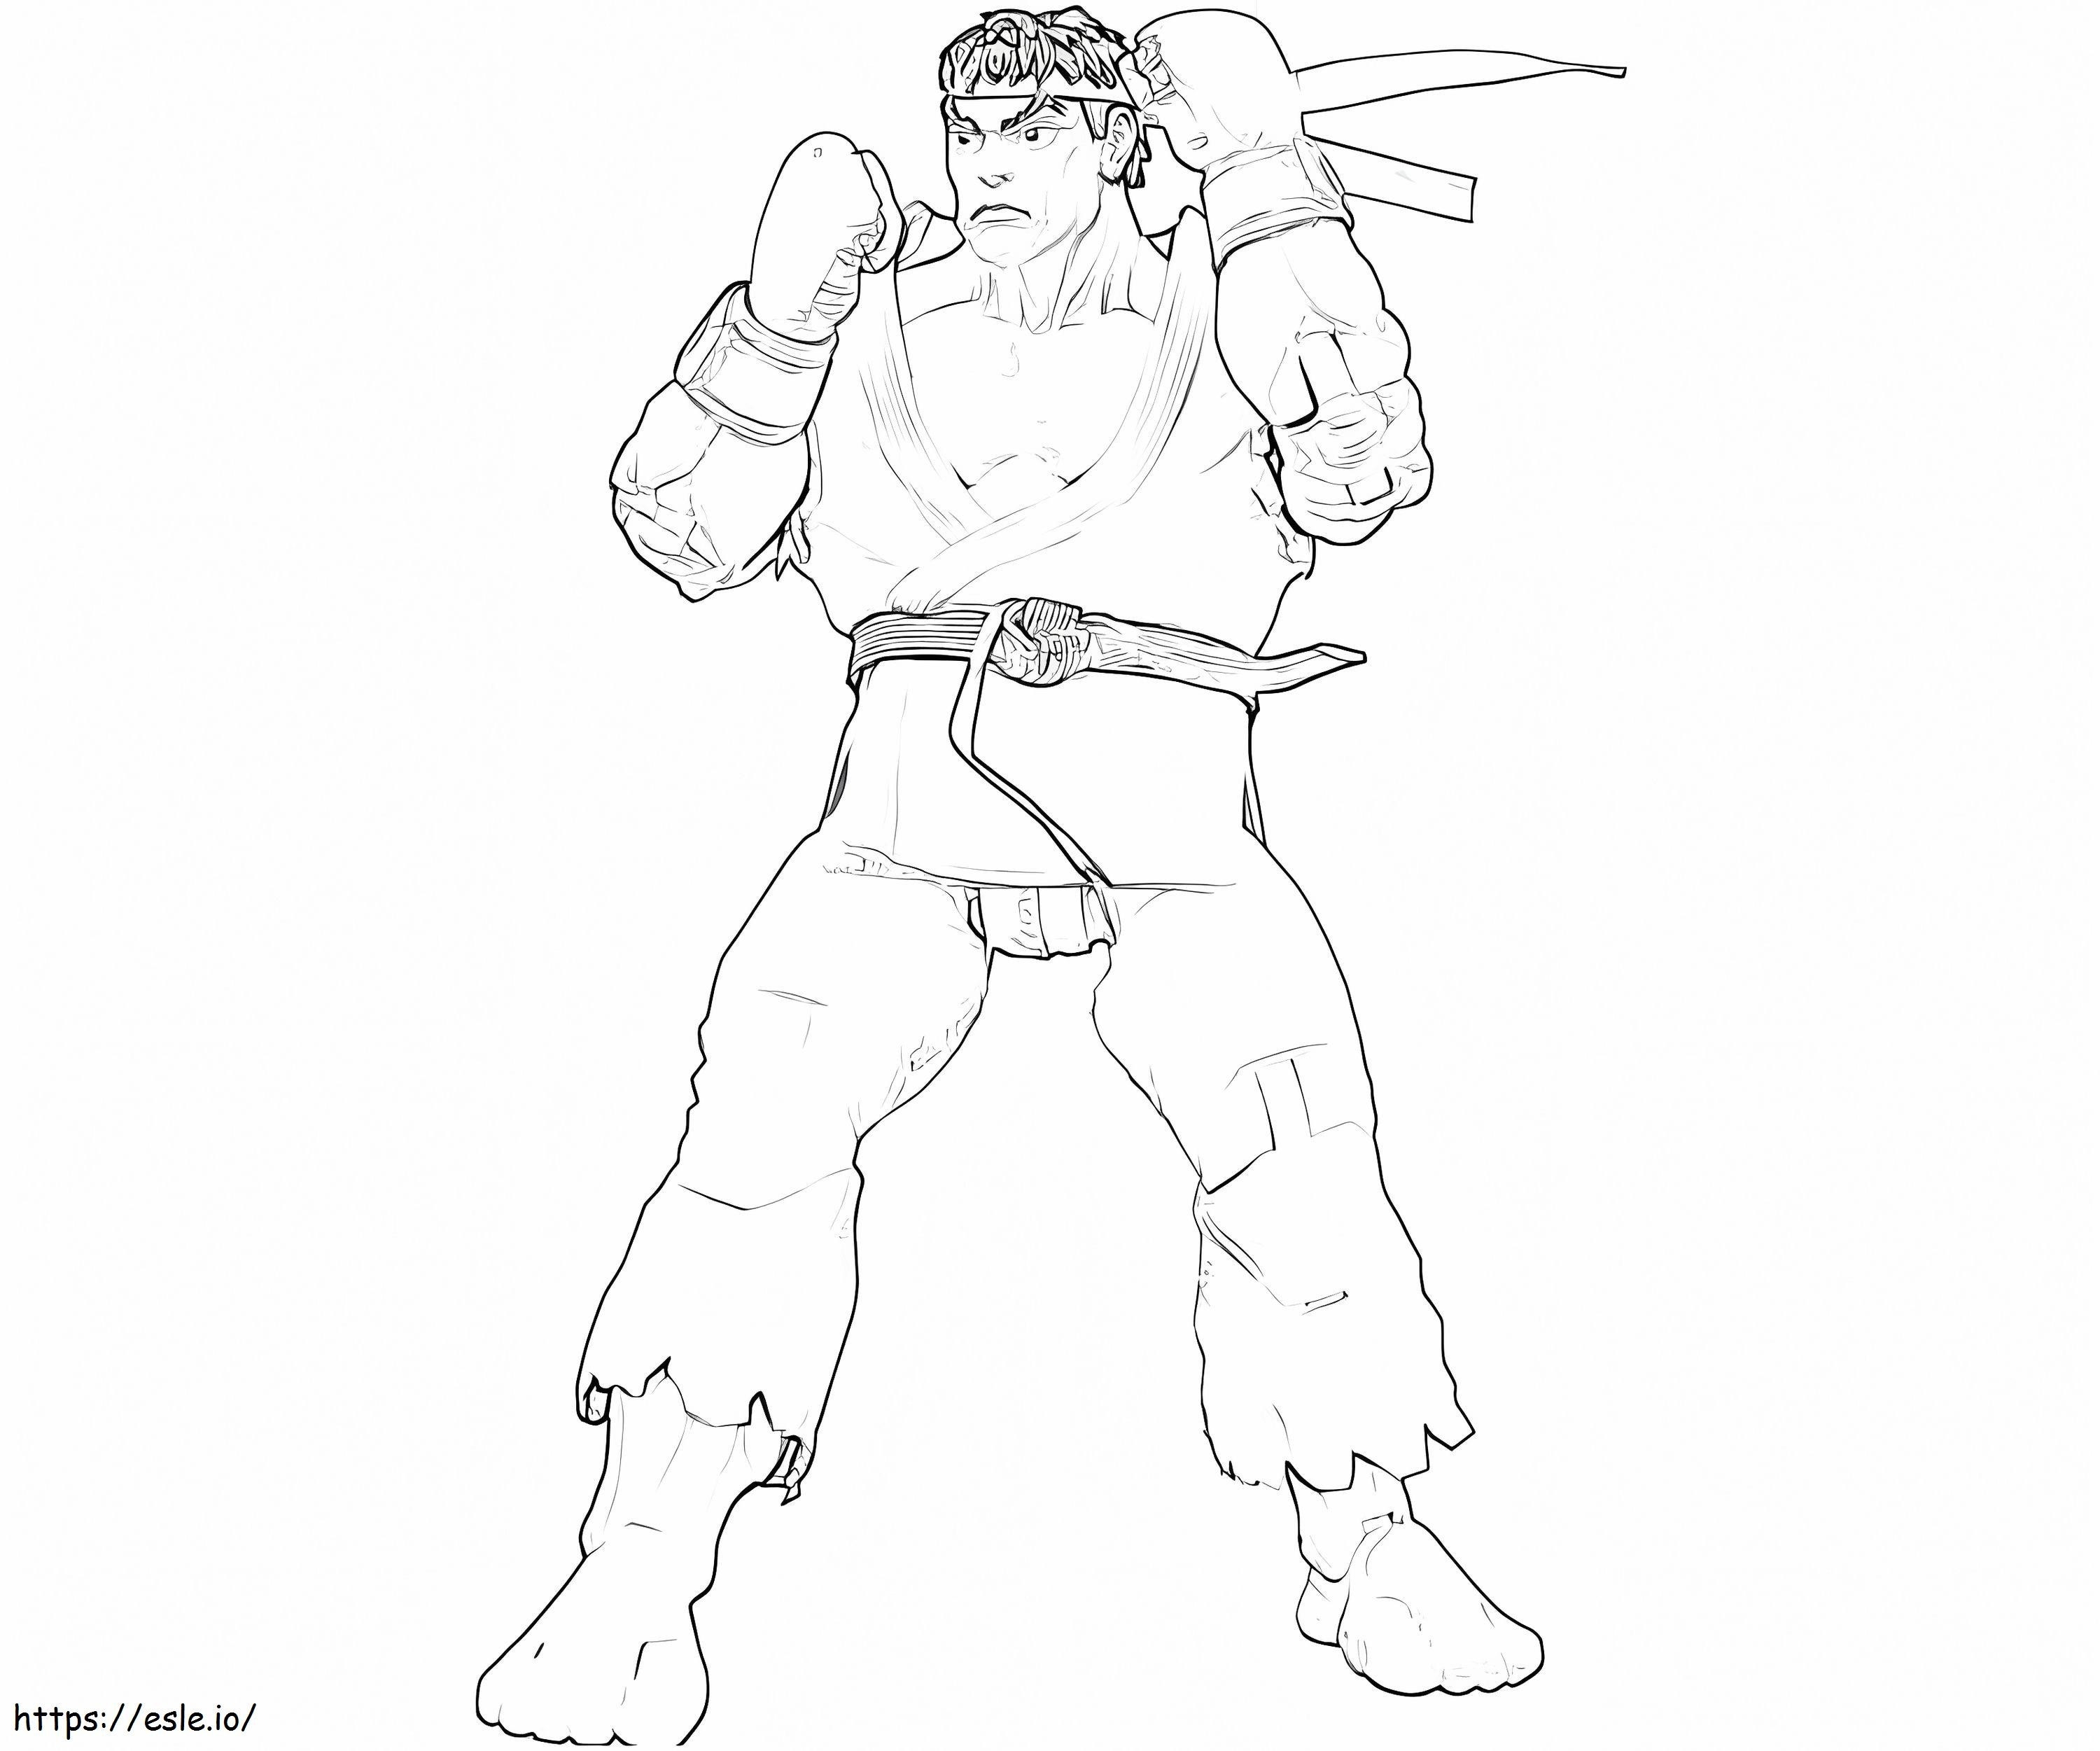 Narysuj Ryu kolorowanka